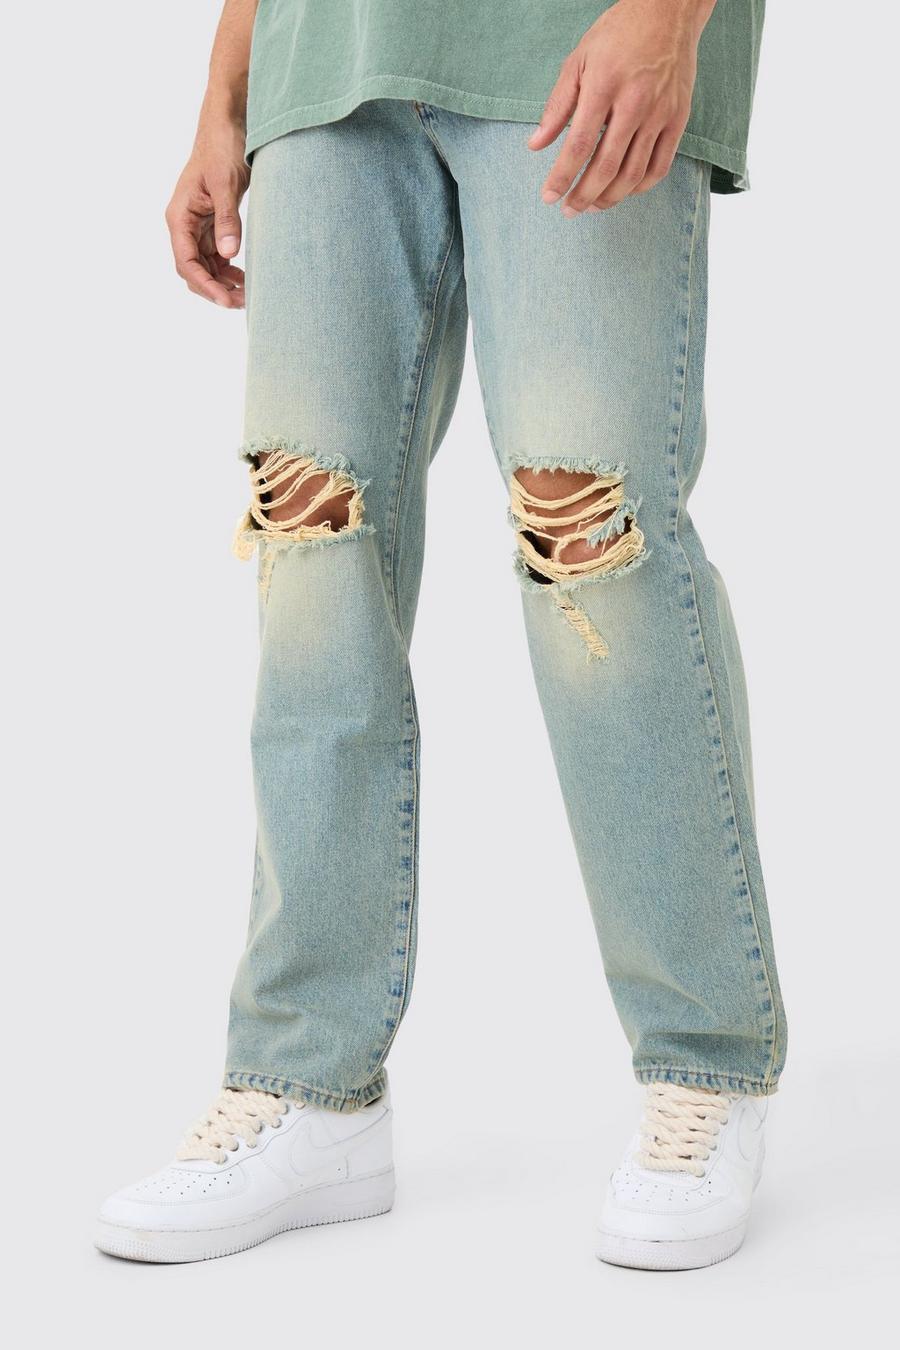 Lockere Jeans mit Riss am Knie in Antikem Blau, Antique blue